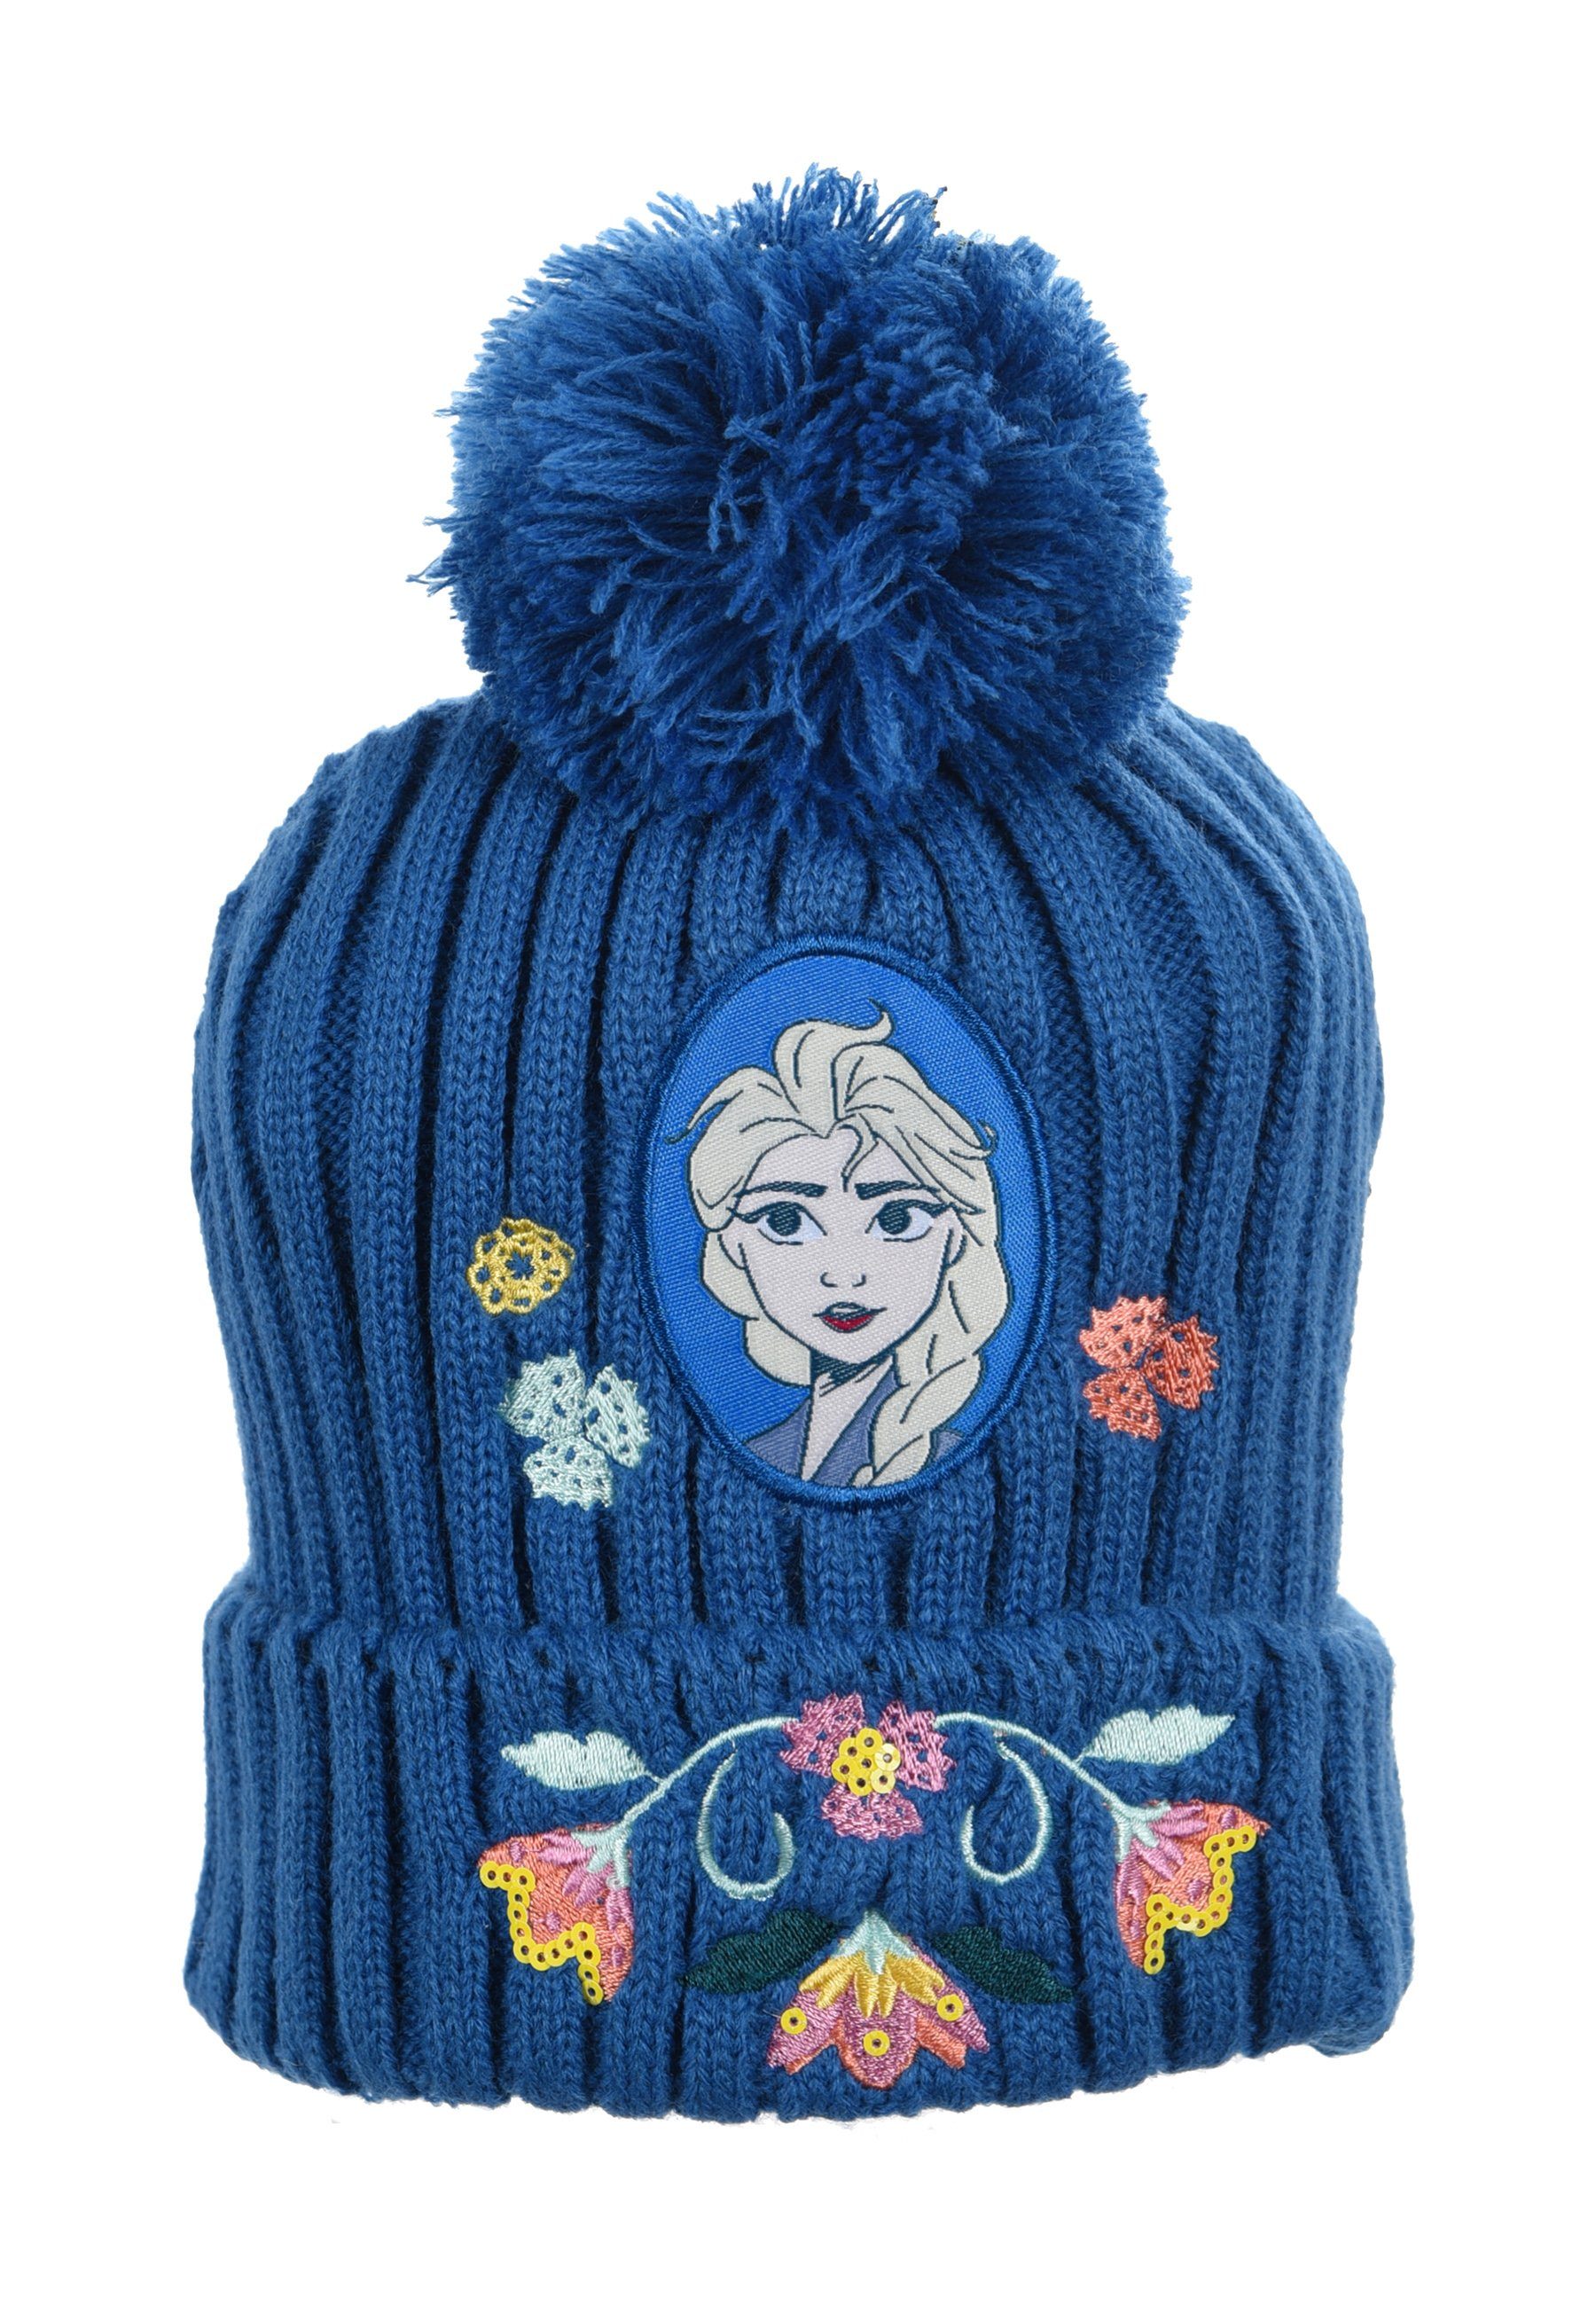 Frozen Bommelmütze Kinder Winter-Mütze Blau Mädchen Elsa Strick Disney Eiskönigin Mütze